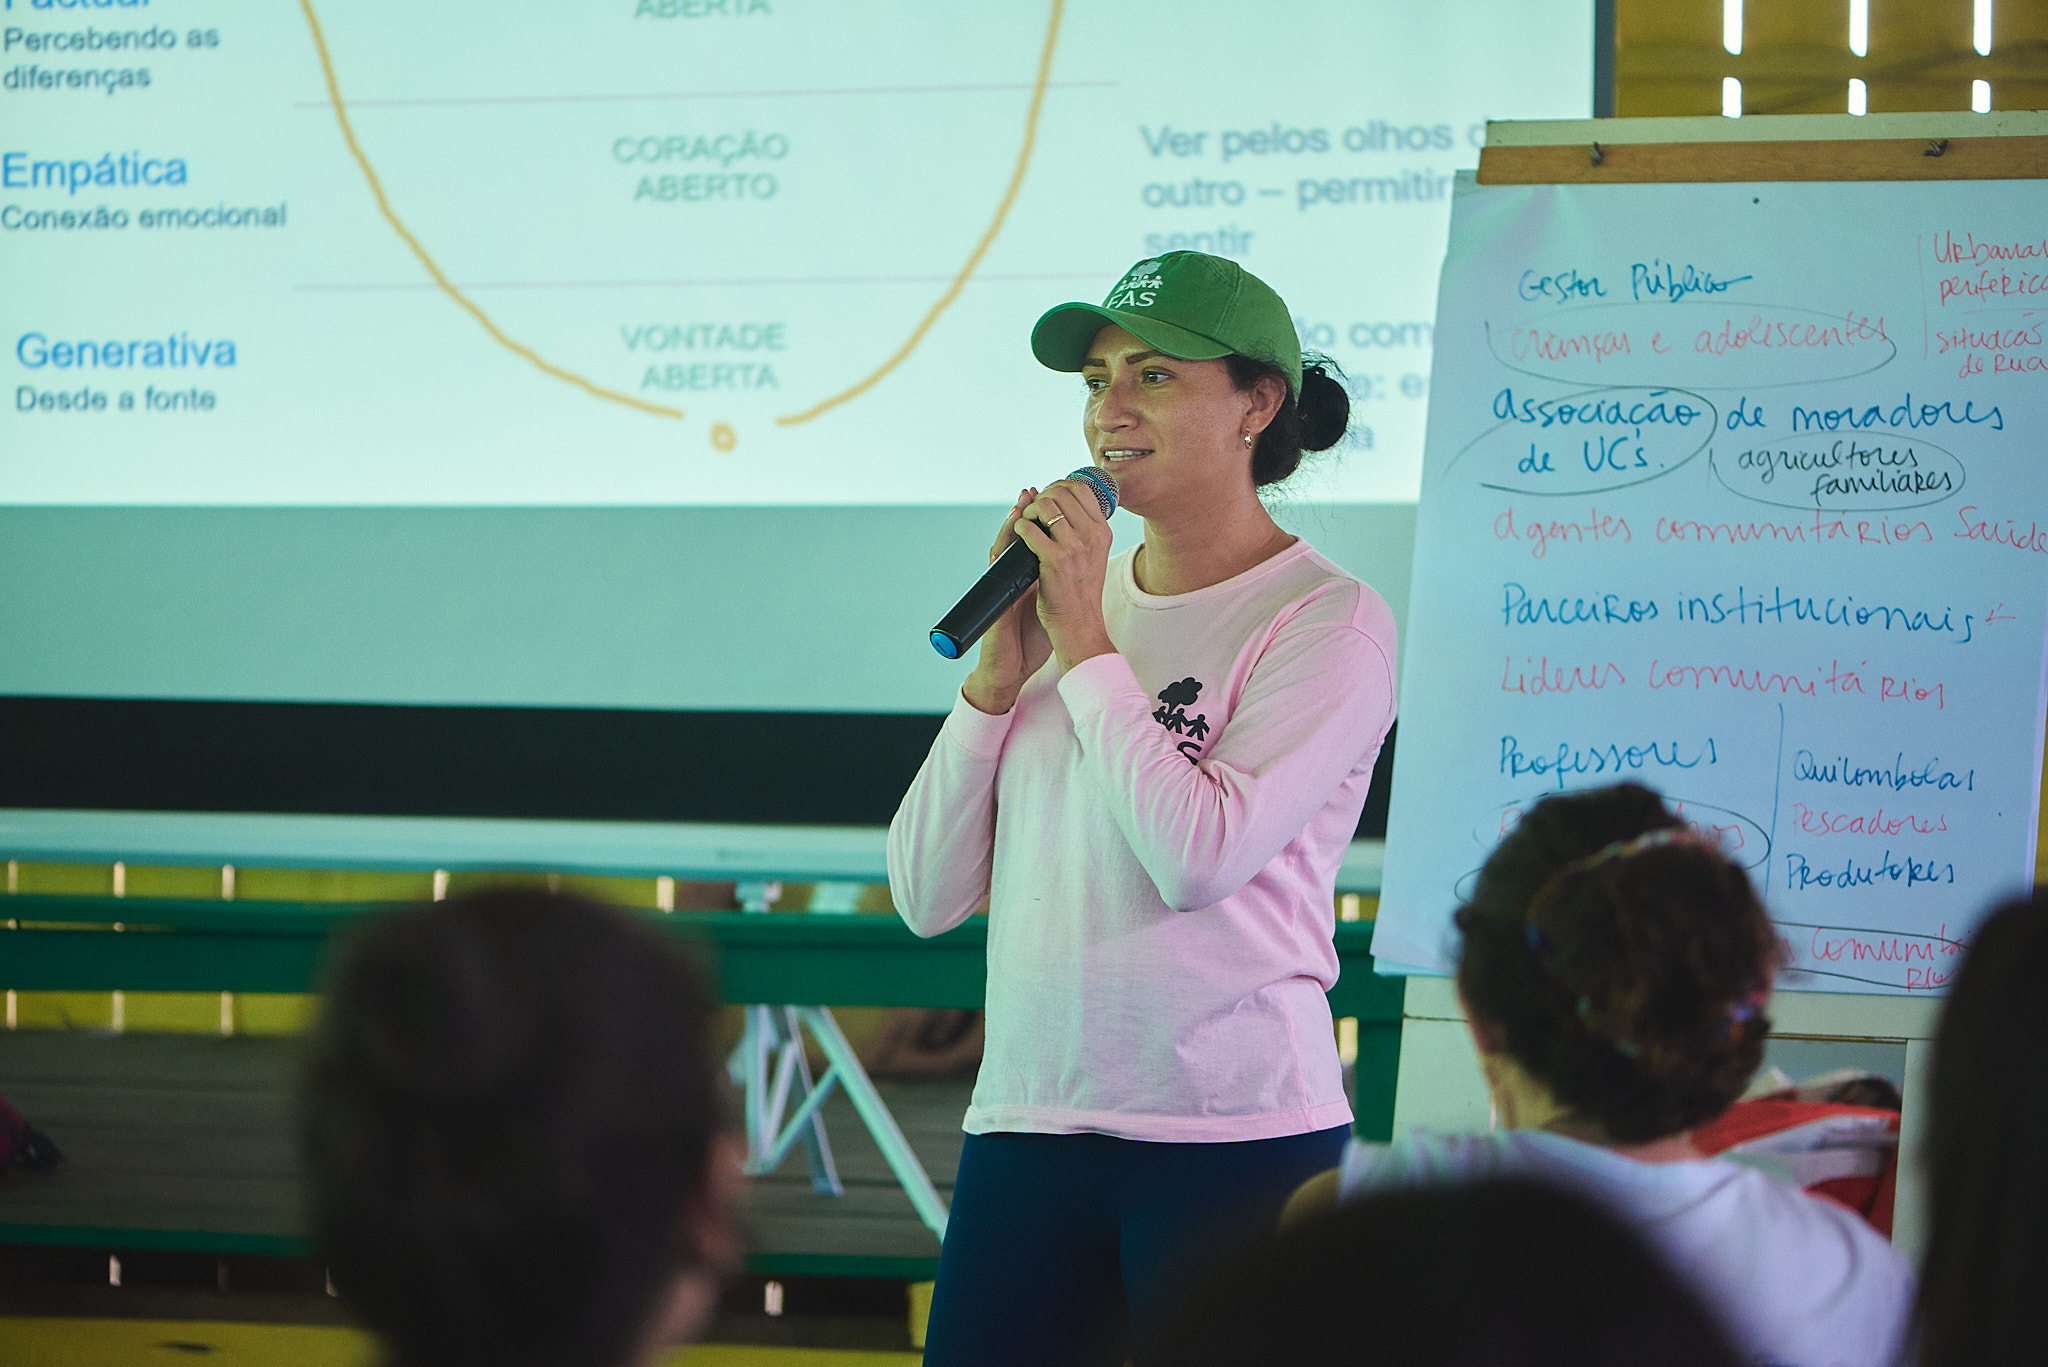 Colaboradora da Fundação Amazônia Sustentável (FAS) palestrando durante atividade em campo.